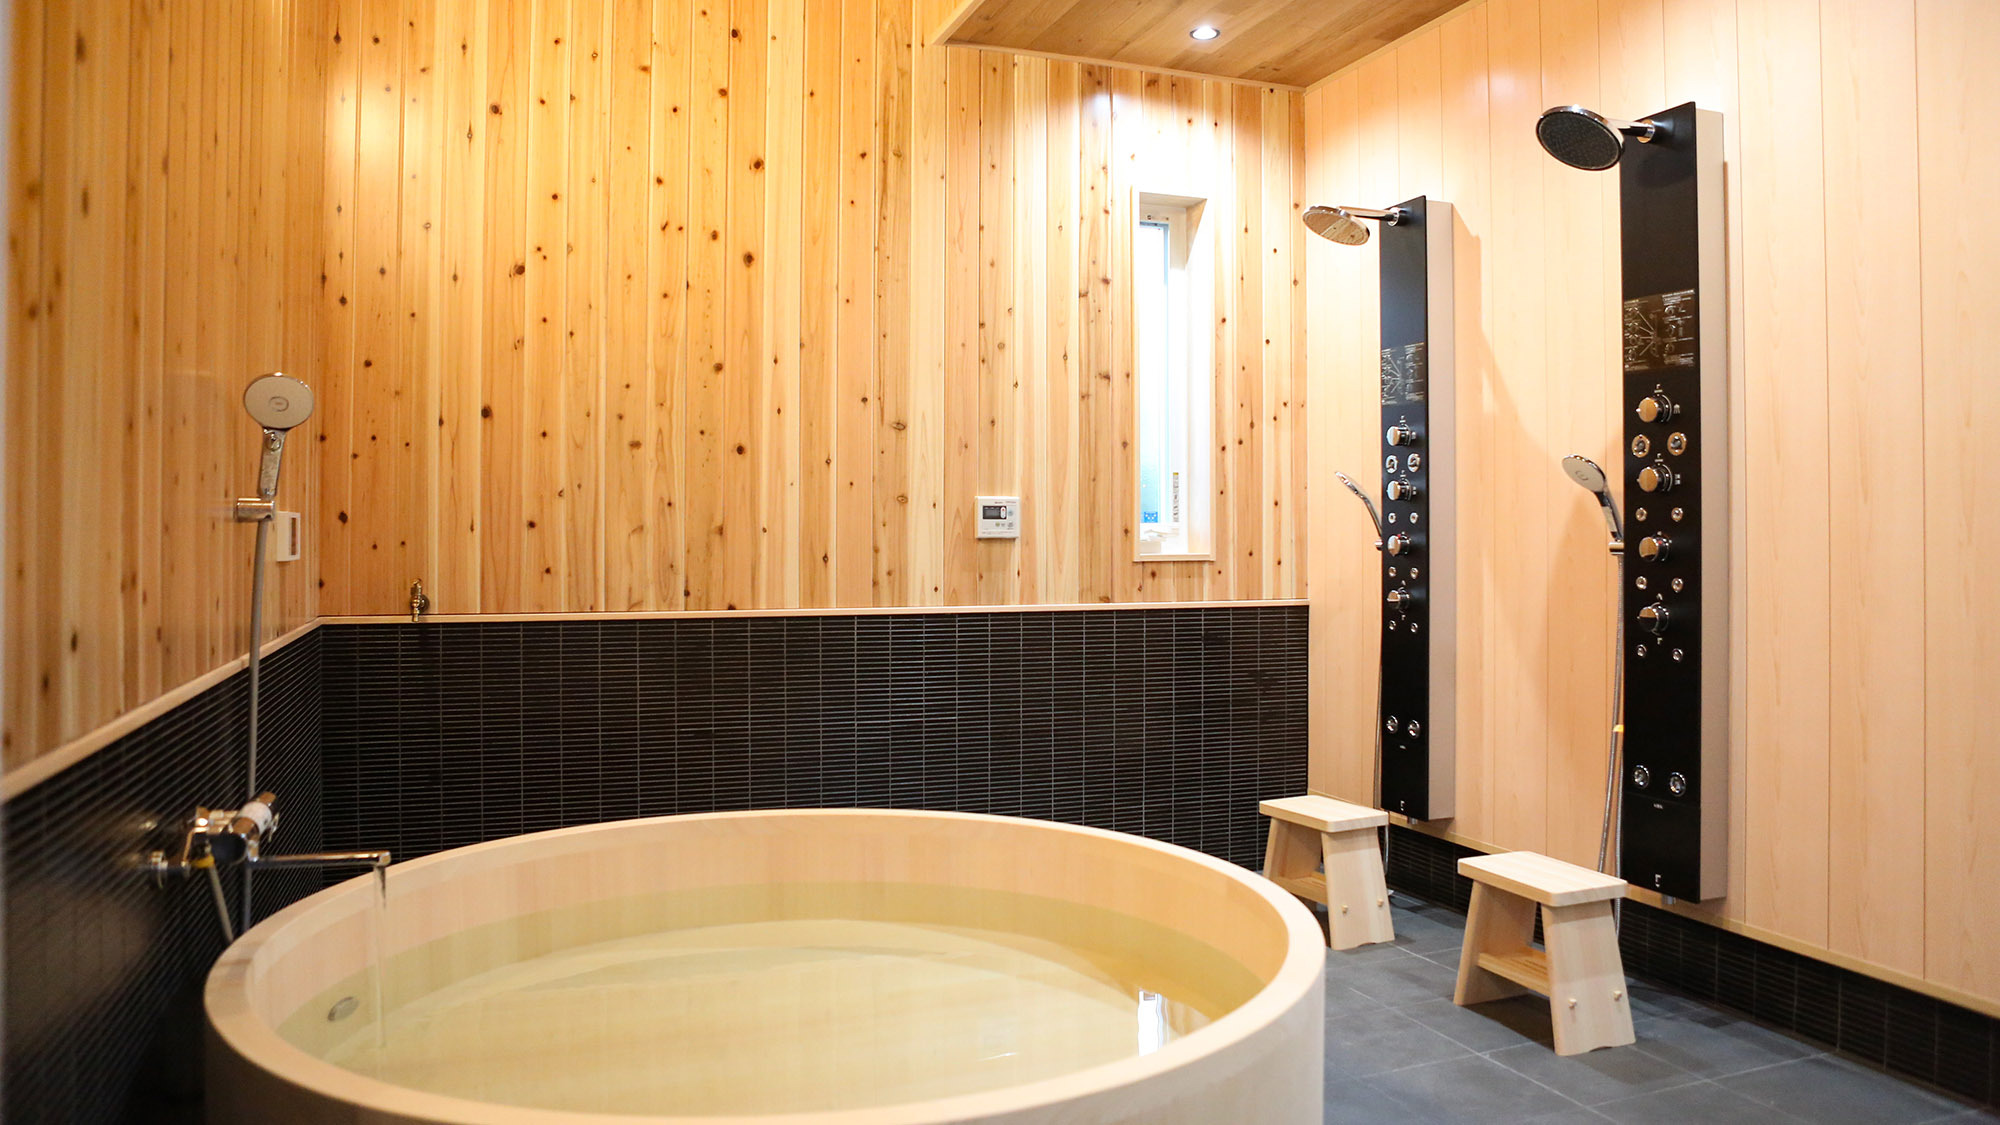 ・【鳳凰館・ヒノキ風呂】こだわりが詰まった檜風呂&マッサージ機能付きシャワー